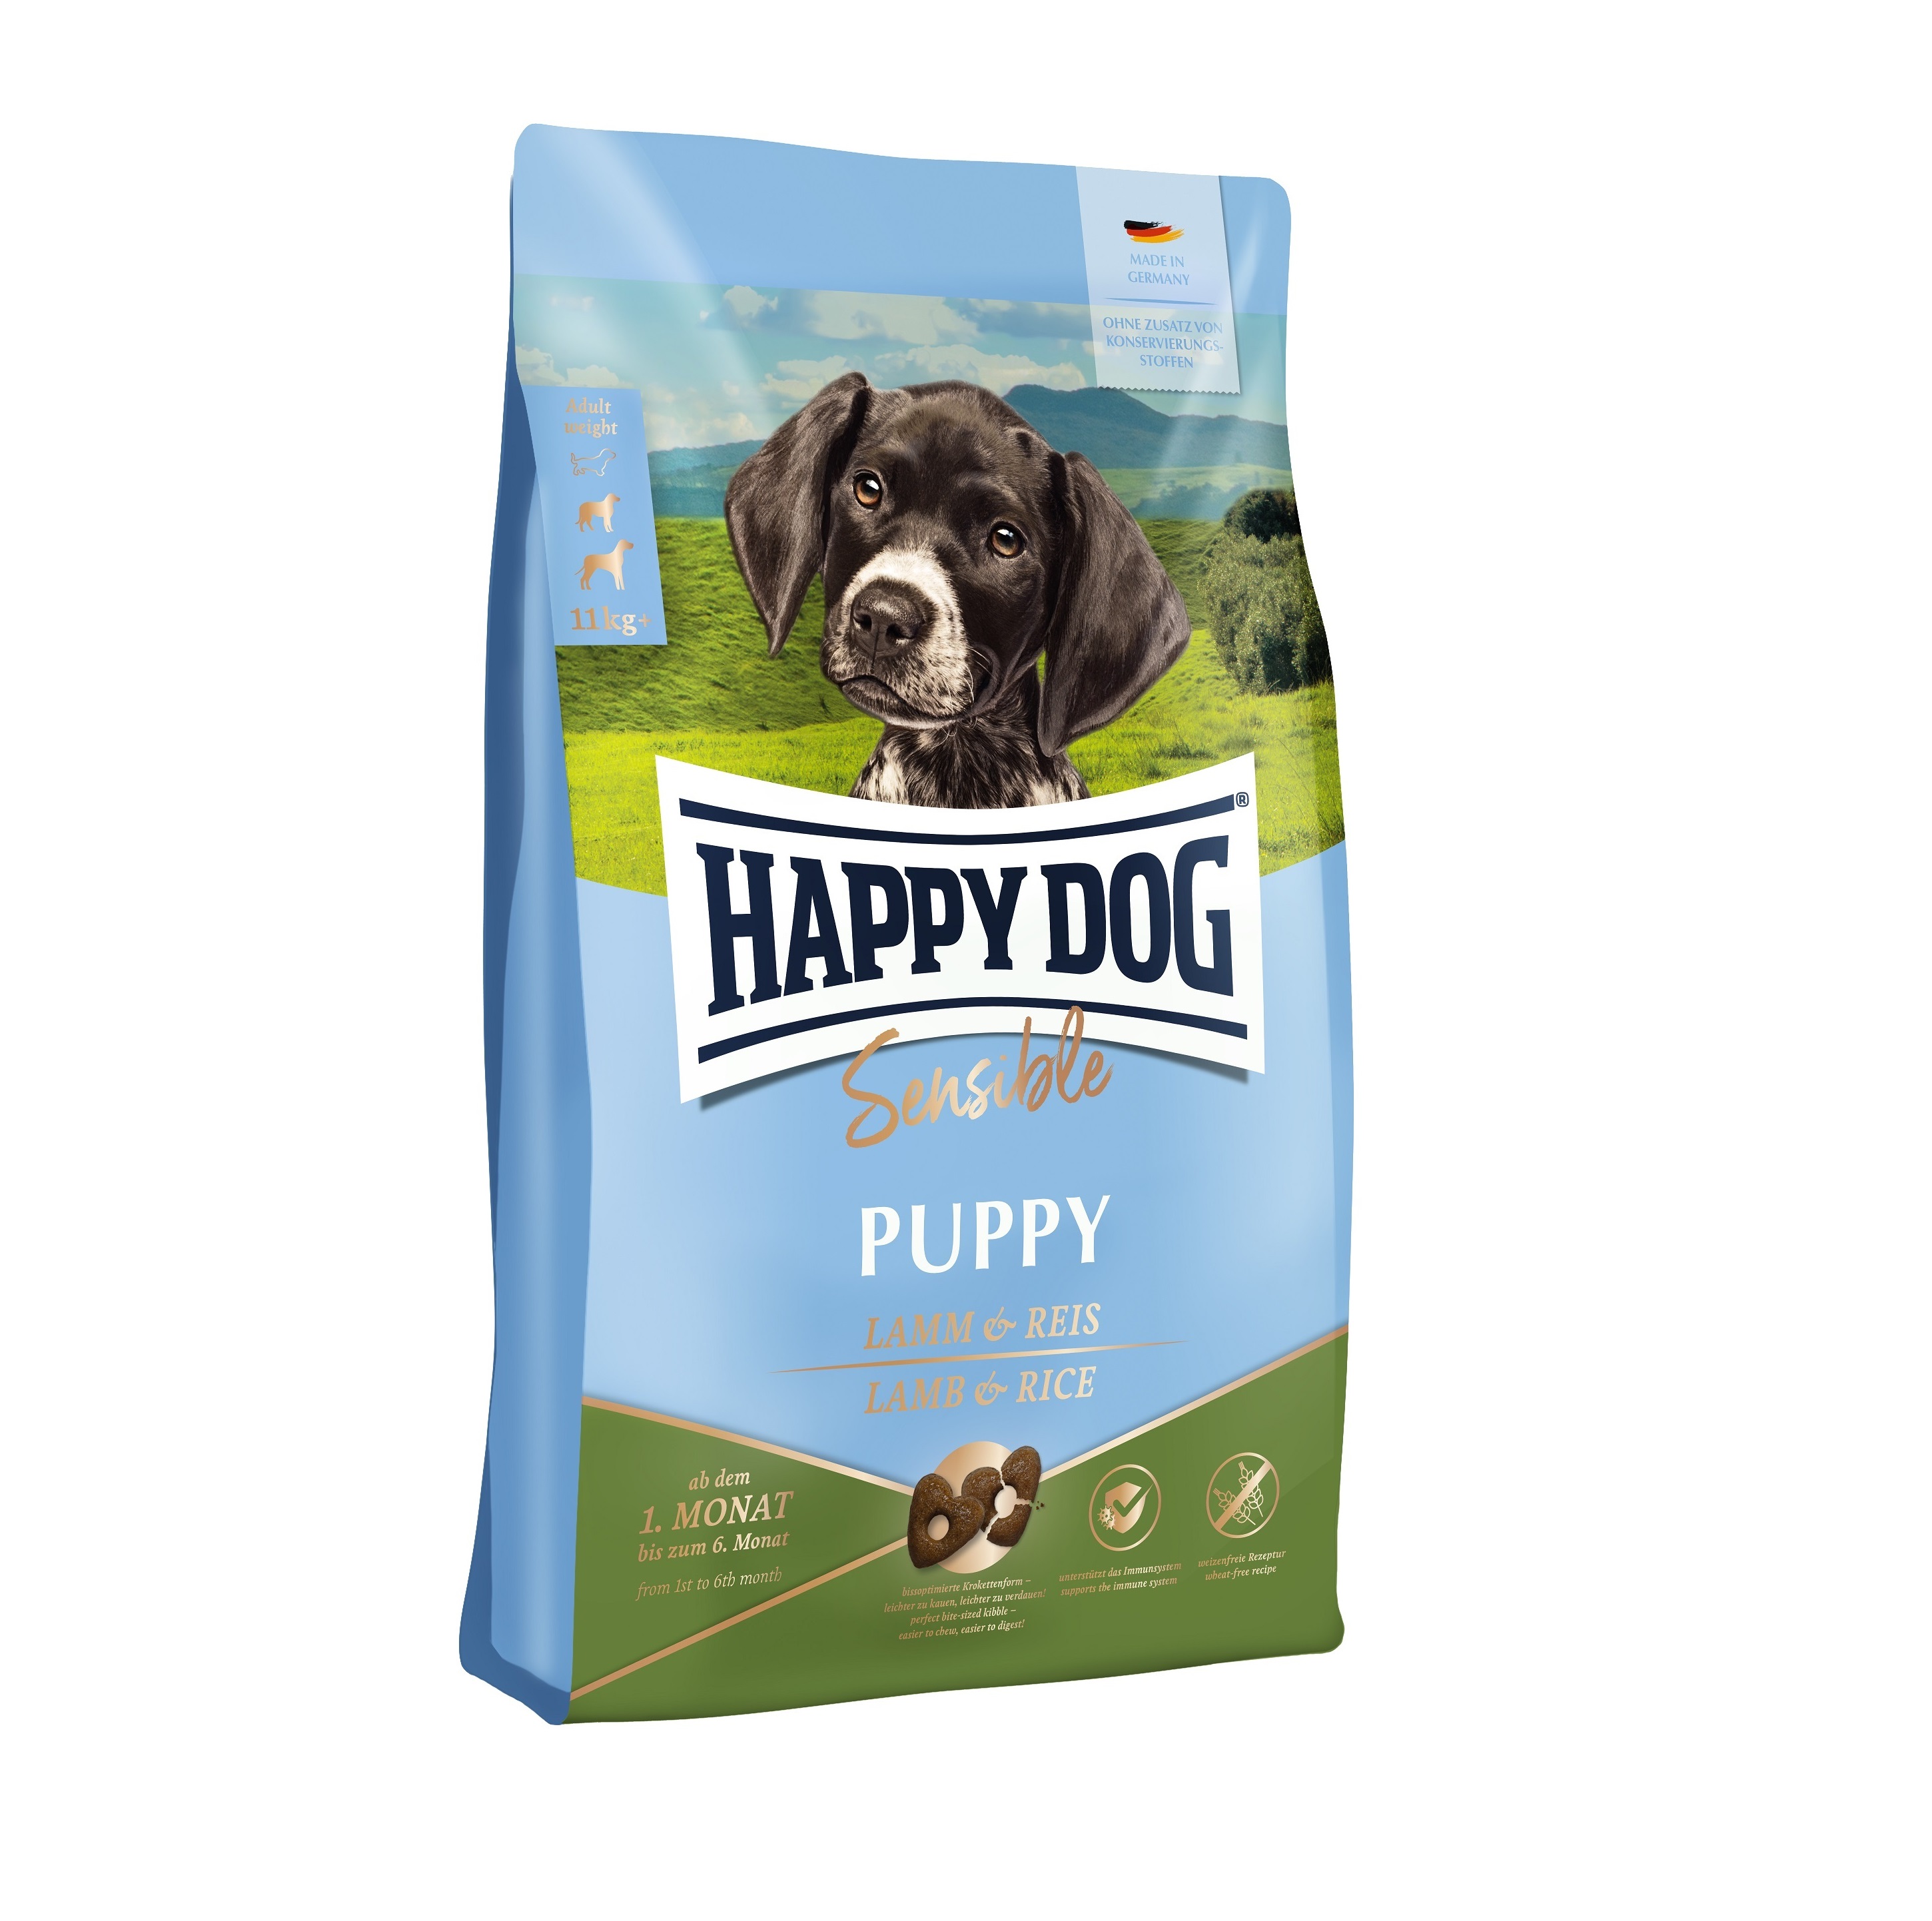 Хэппи Дог 1кг Медиум/Лардж Паппи - для щенков Средних/Крупных пород с 4-х недель (Happy Dog)